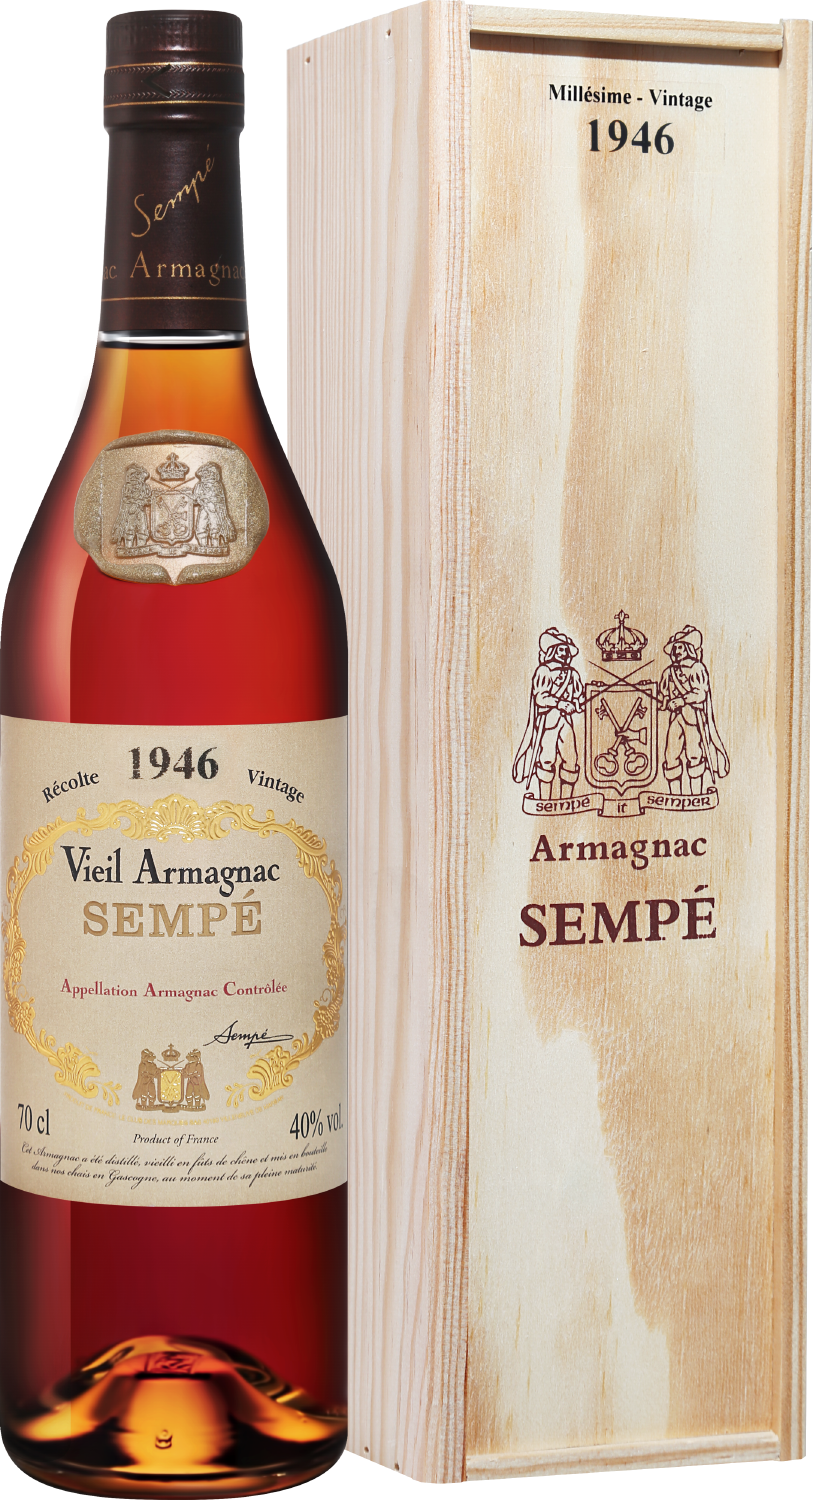 Sempe Vieil Armagnac 1946 (gift box)